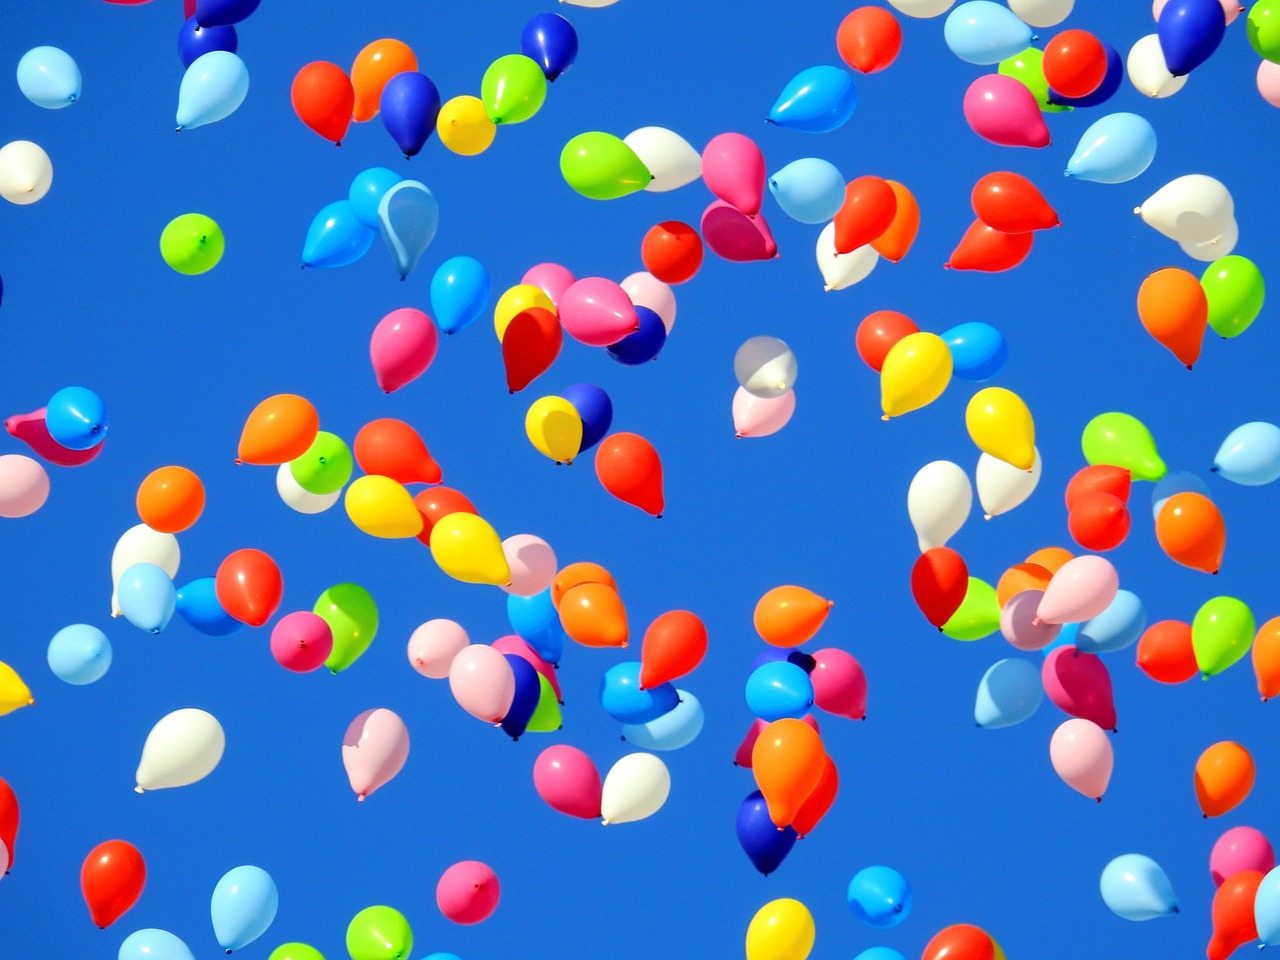 Das Bild zeigt bunte Luftballons am Himmel aufsteigen